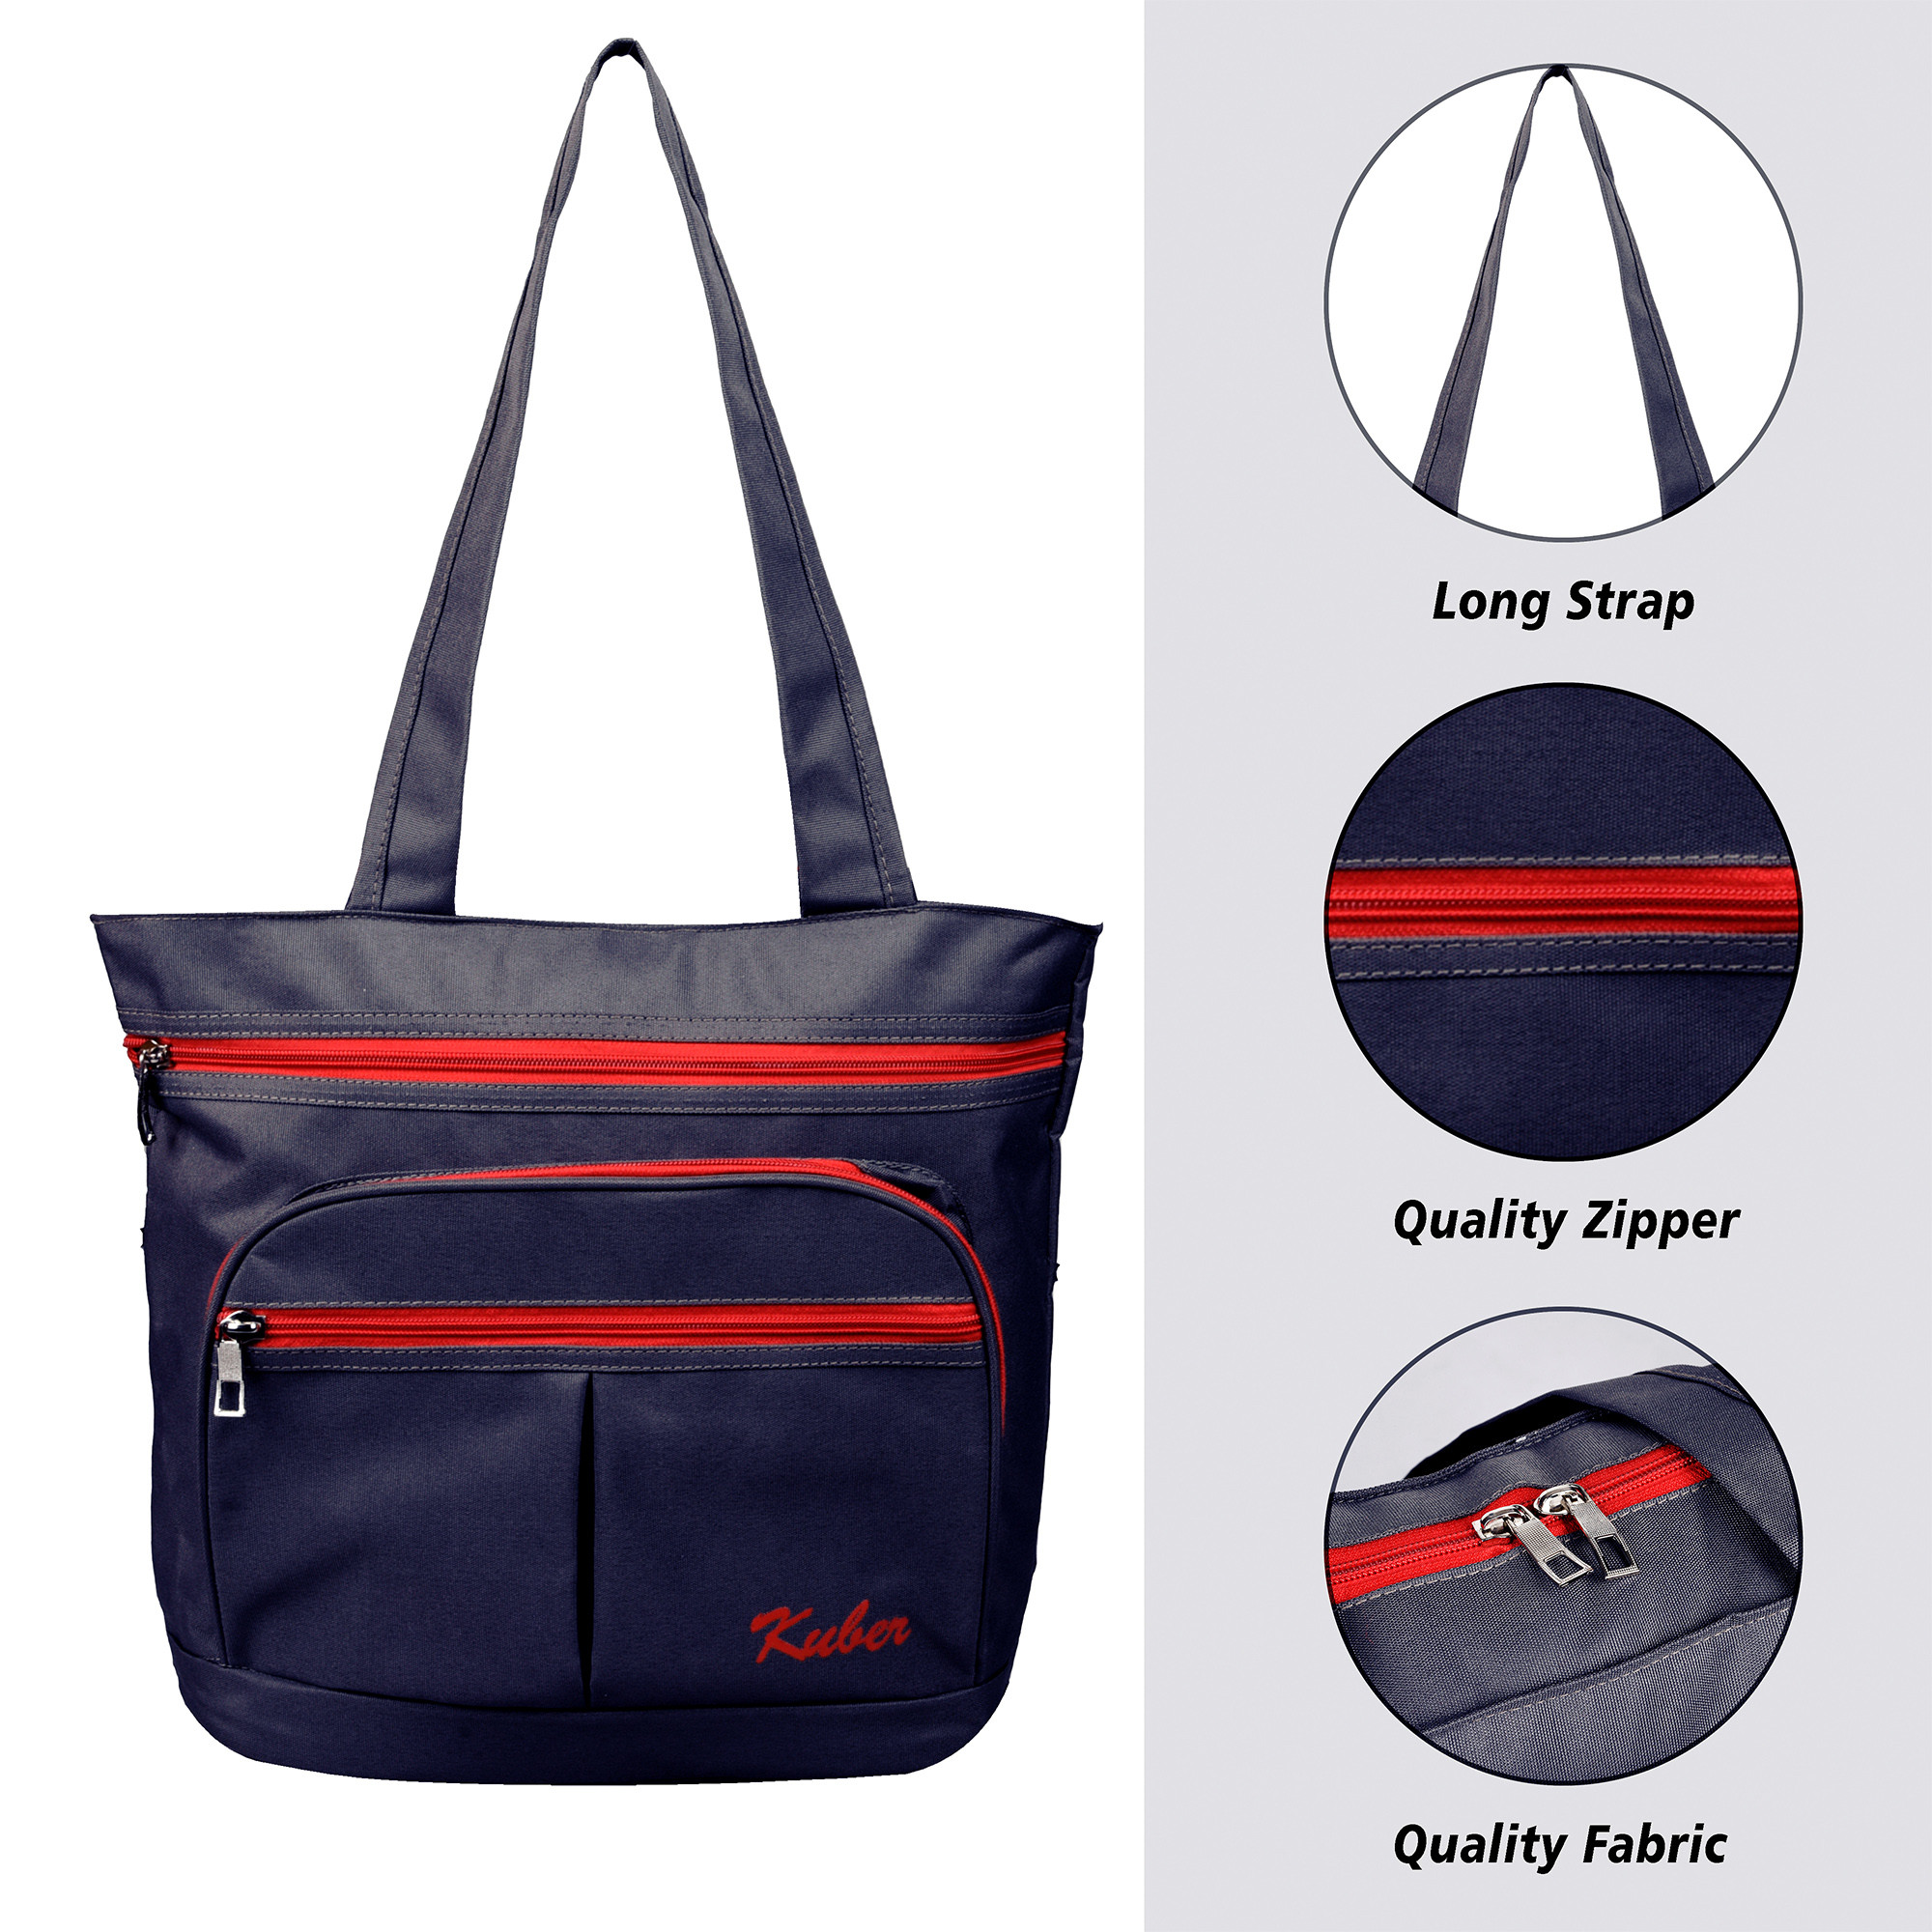 Kuber Industries Shopping Bag | Grocery Handbag | 4 Compartment Shopping Bag | Grocery Bag for Shopping | Vegetable Bag | Shoulder Bag with Handle | Navy Blue